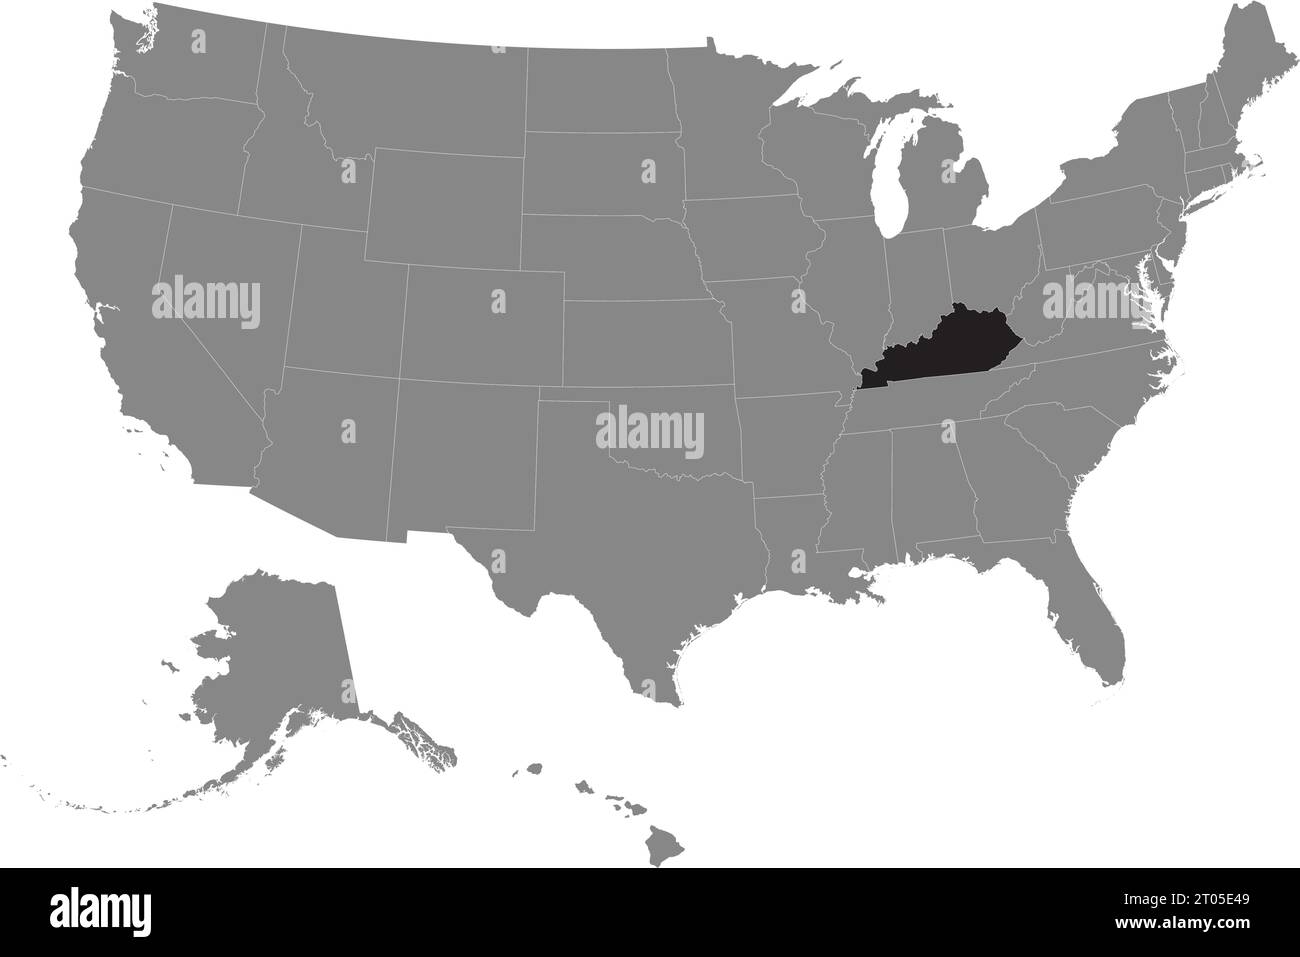 Schwarze CMYK-Bundeskarte von KENTUCKY in detaillierter grauer, leerer politischer Karte der Vereinigten Staaten von Amerika auf transparentem Hintergrund Stock Vektor